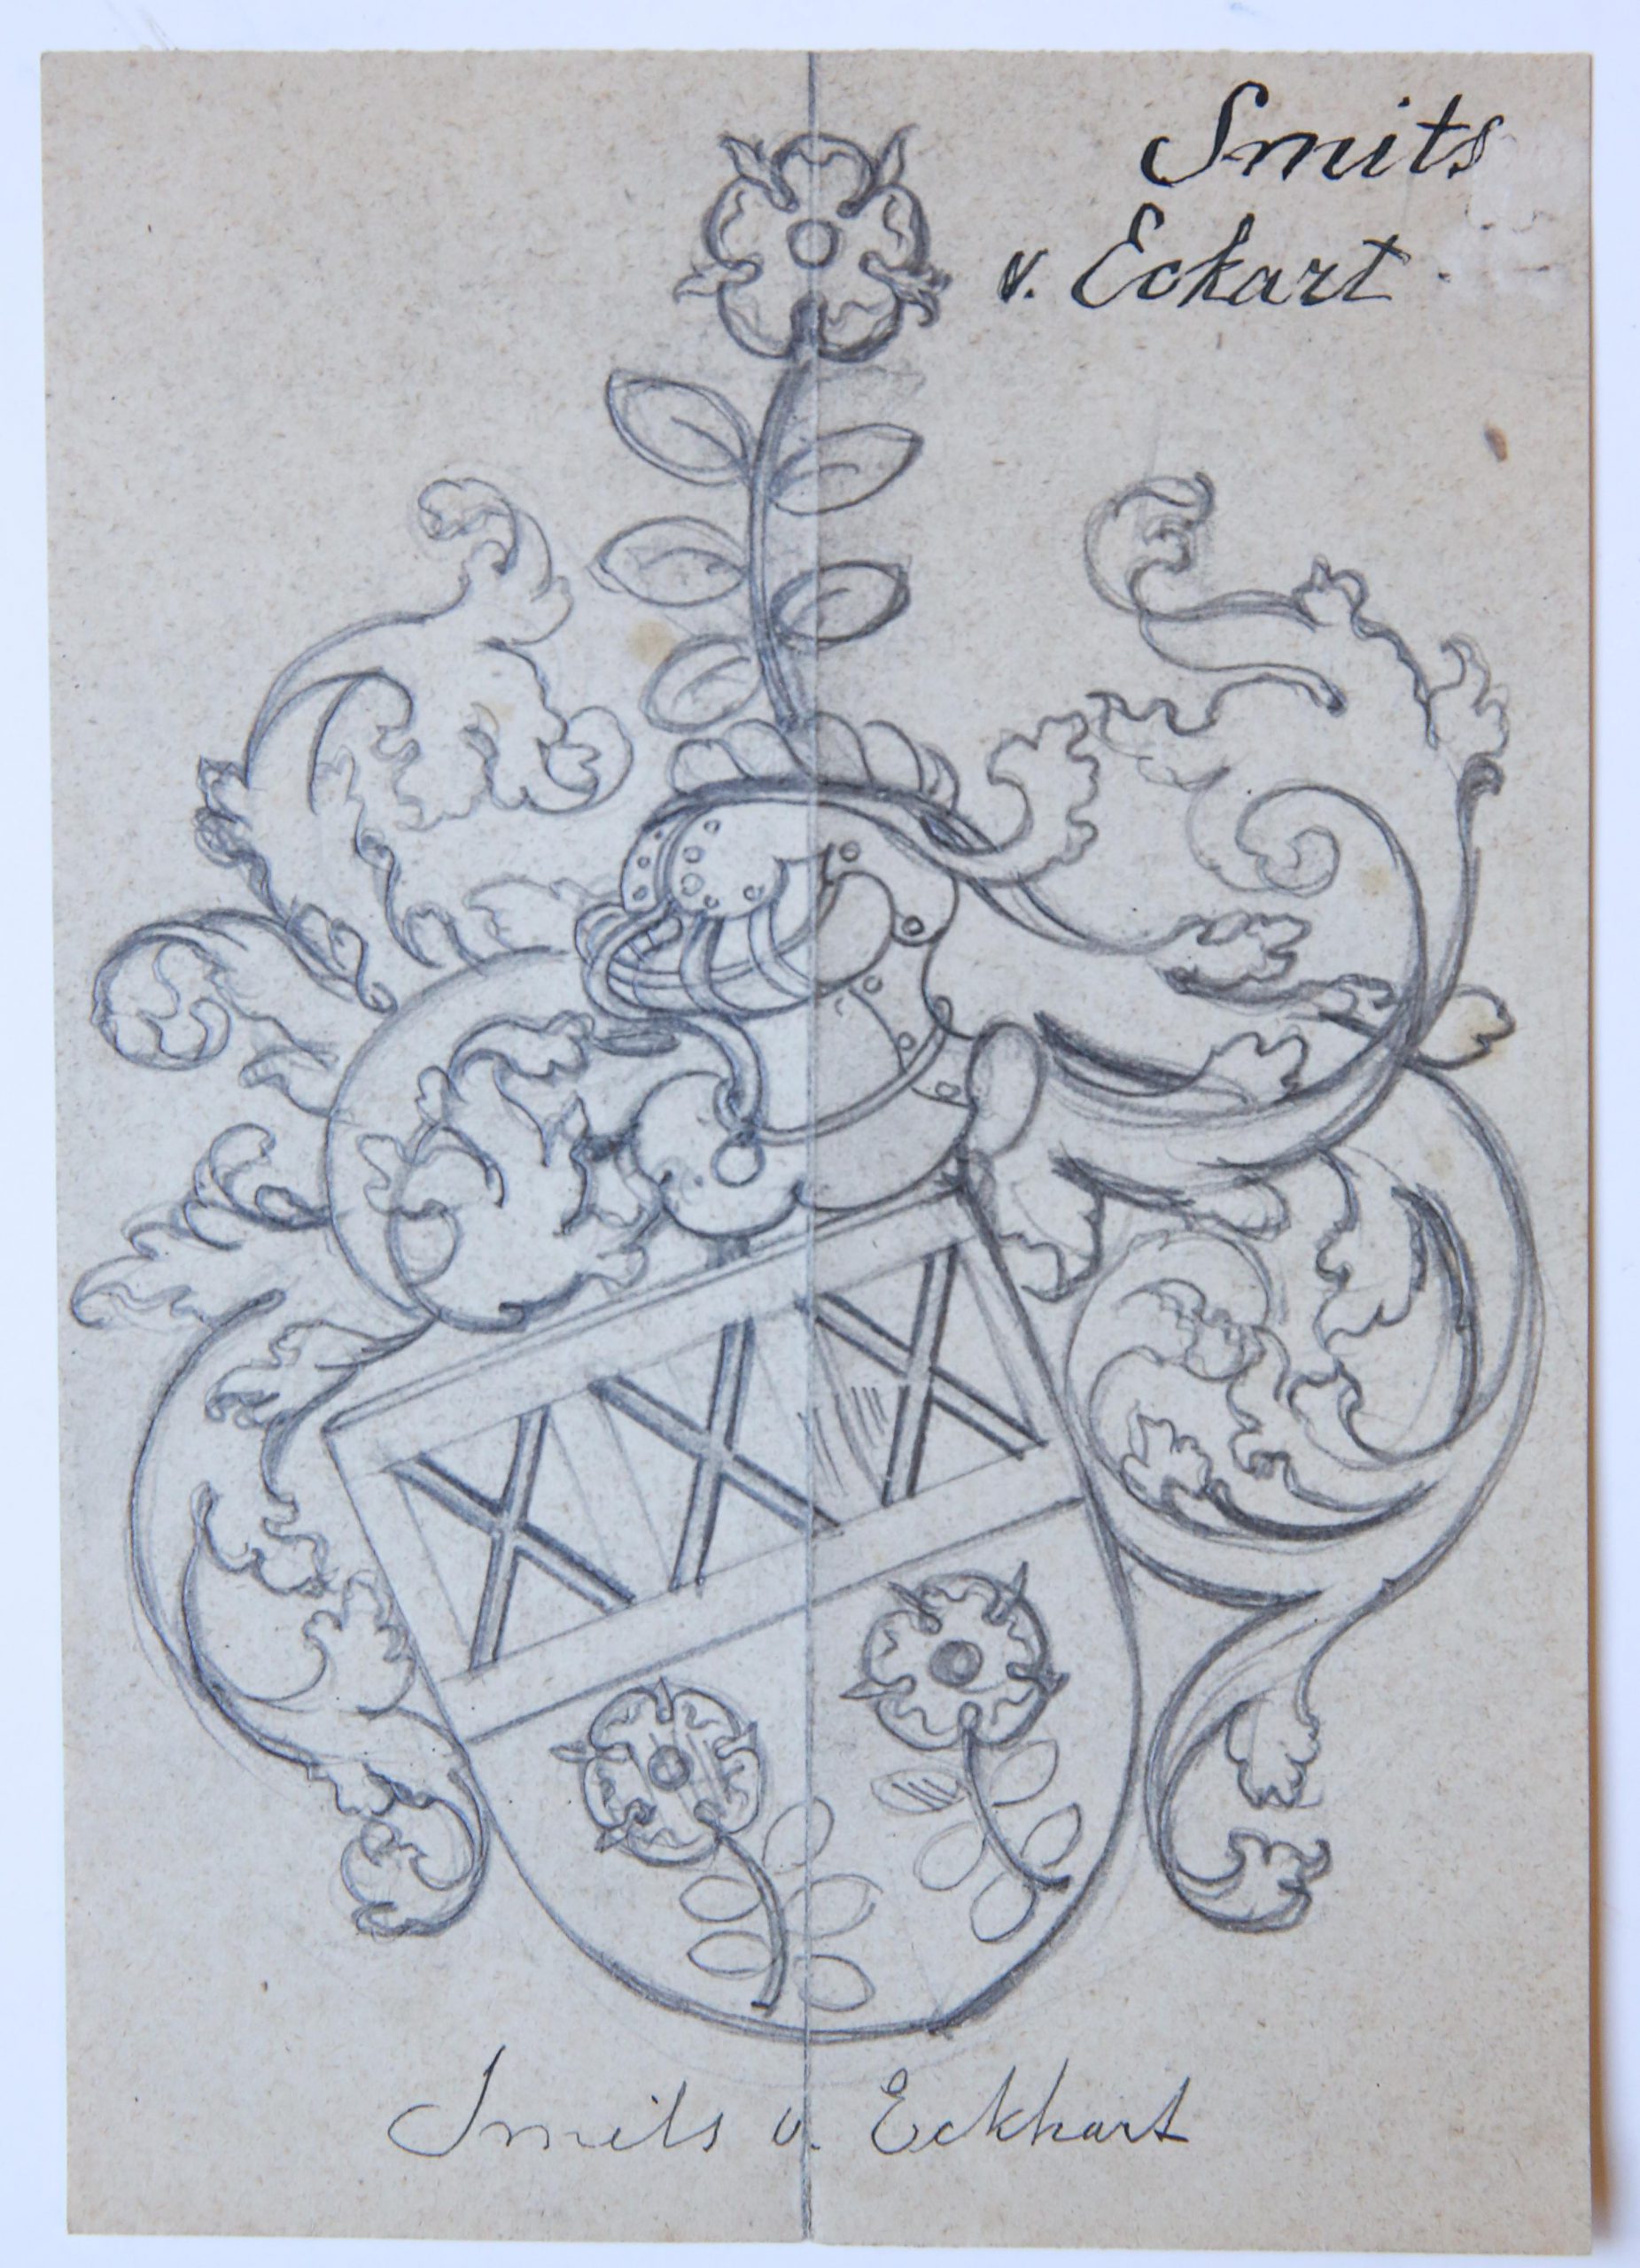 Ontwerp Wapenkaart/Coat of Arms: Smits van Eckart.